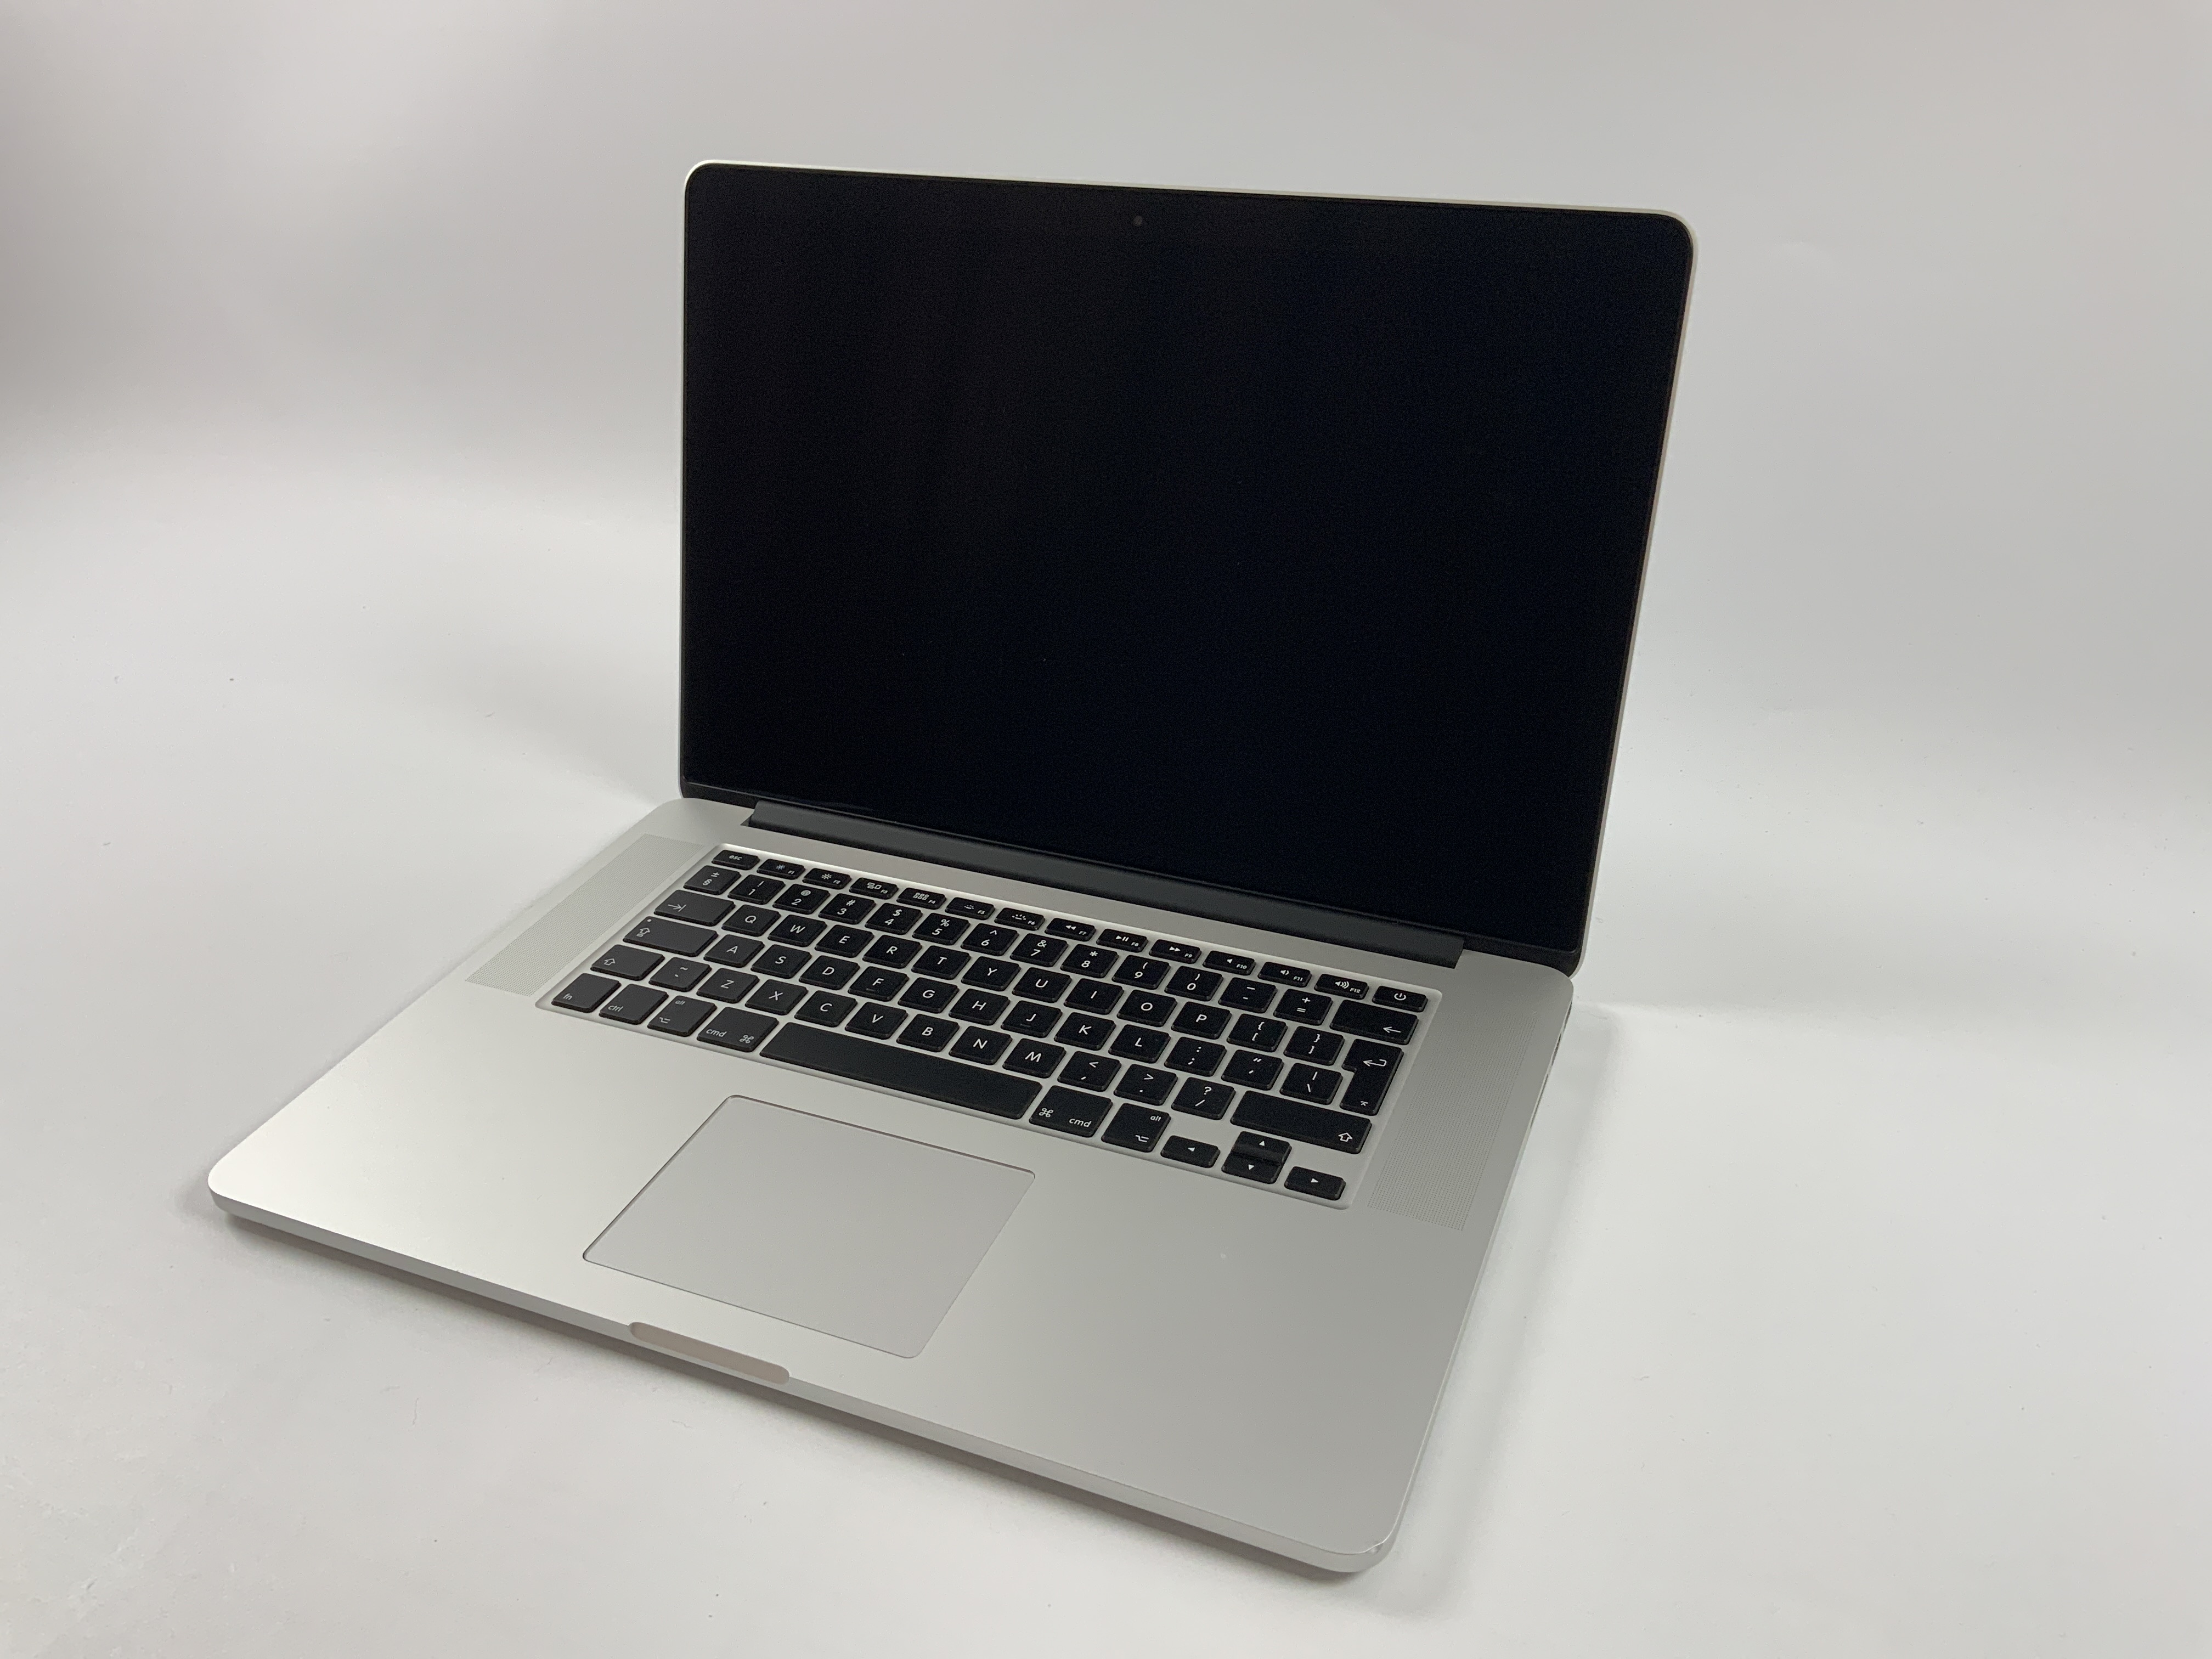 MacBook Pro Retina 15" Mid 2015 (Intel Quad-Core i7 2.2 GHz 16 GB RAM 256 GB SSD), Intel Quad-Core i7 2.2 GHz, 16 GB RAM, 256 GB SSD, obraz 1